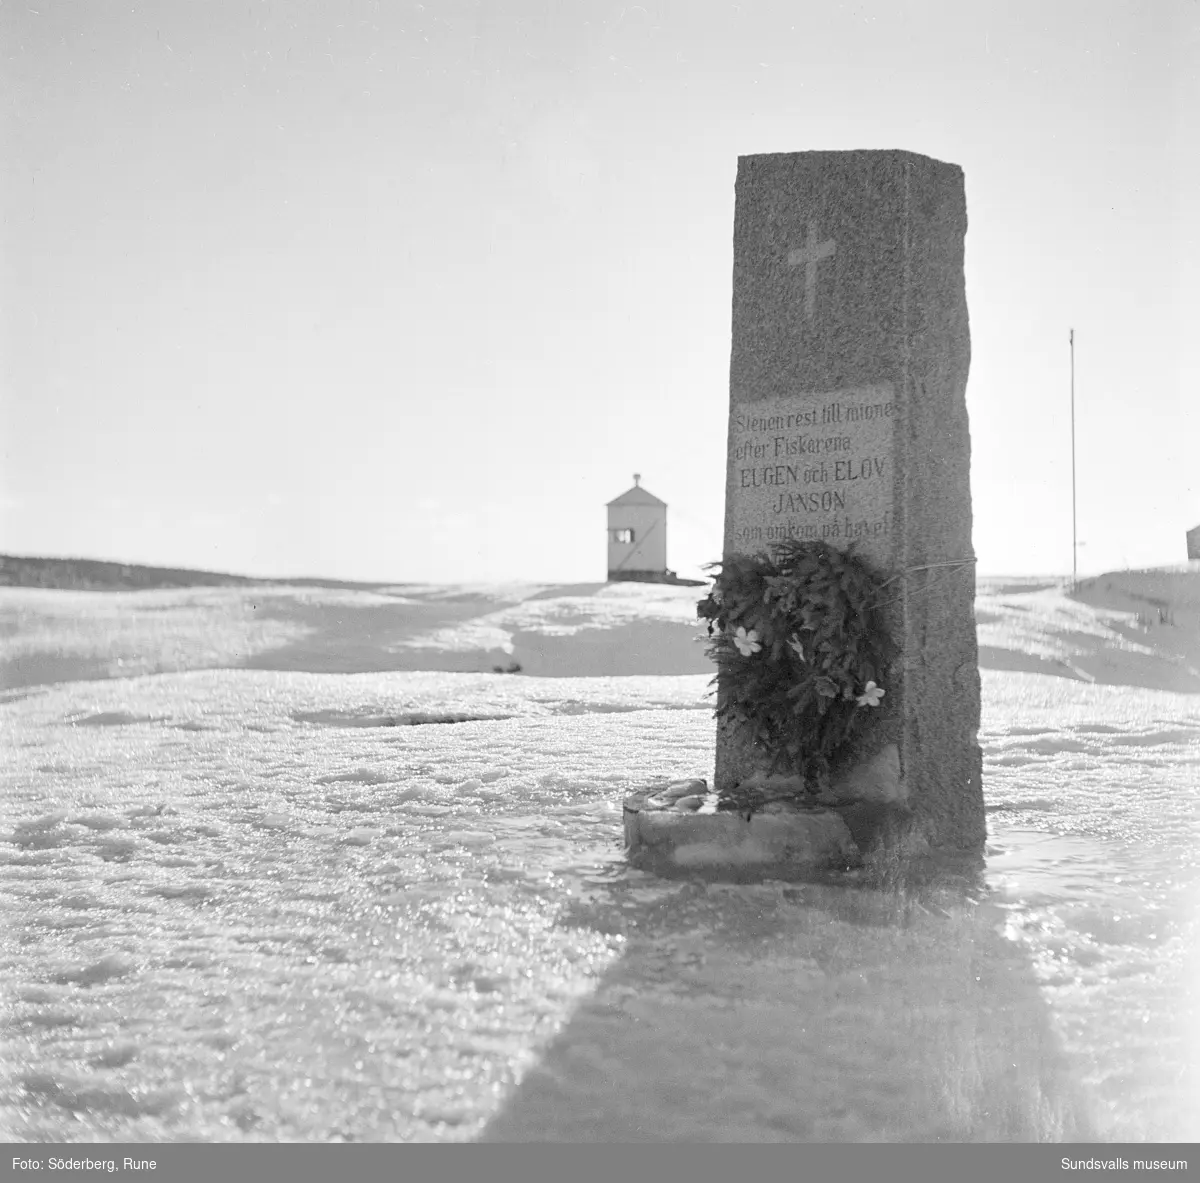 Lörudden, fyren och minnesten med text: "Stenen rest till minne efter Fiskarena Eugen och Elov Janson som omkom på havet den 9 okt 1947. Syskonen".